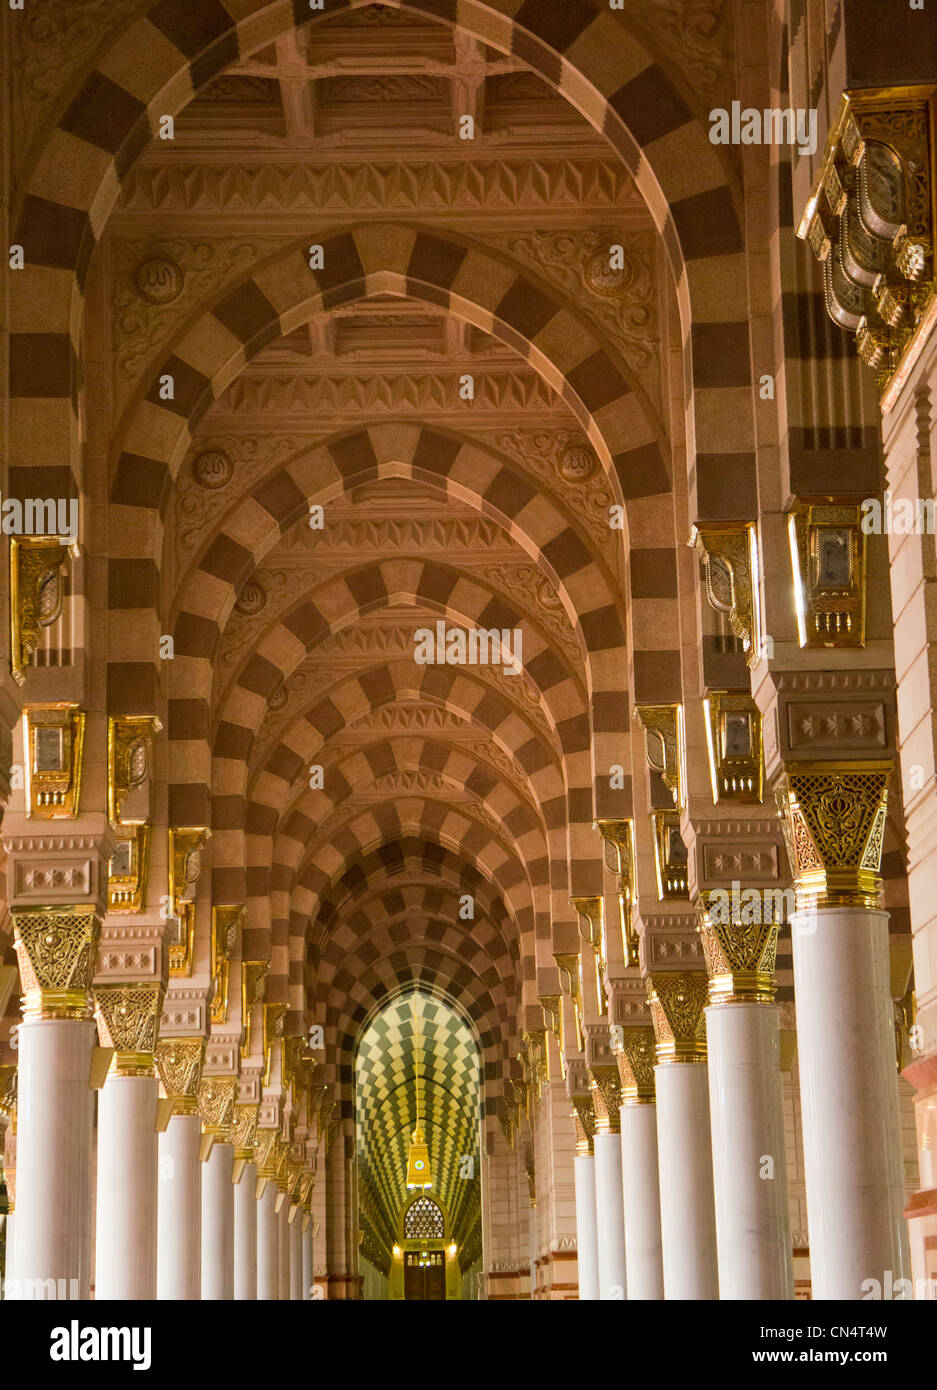 Intérieur de la mosquée (masjid) Nabawi à Al Madinah, Arabie saoudite. Mosquée Nabawi est la deuxième mosquée la plus sainte de l'Islam. Banque D'Images